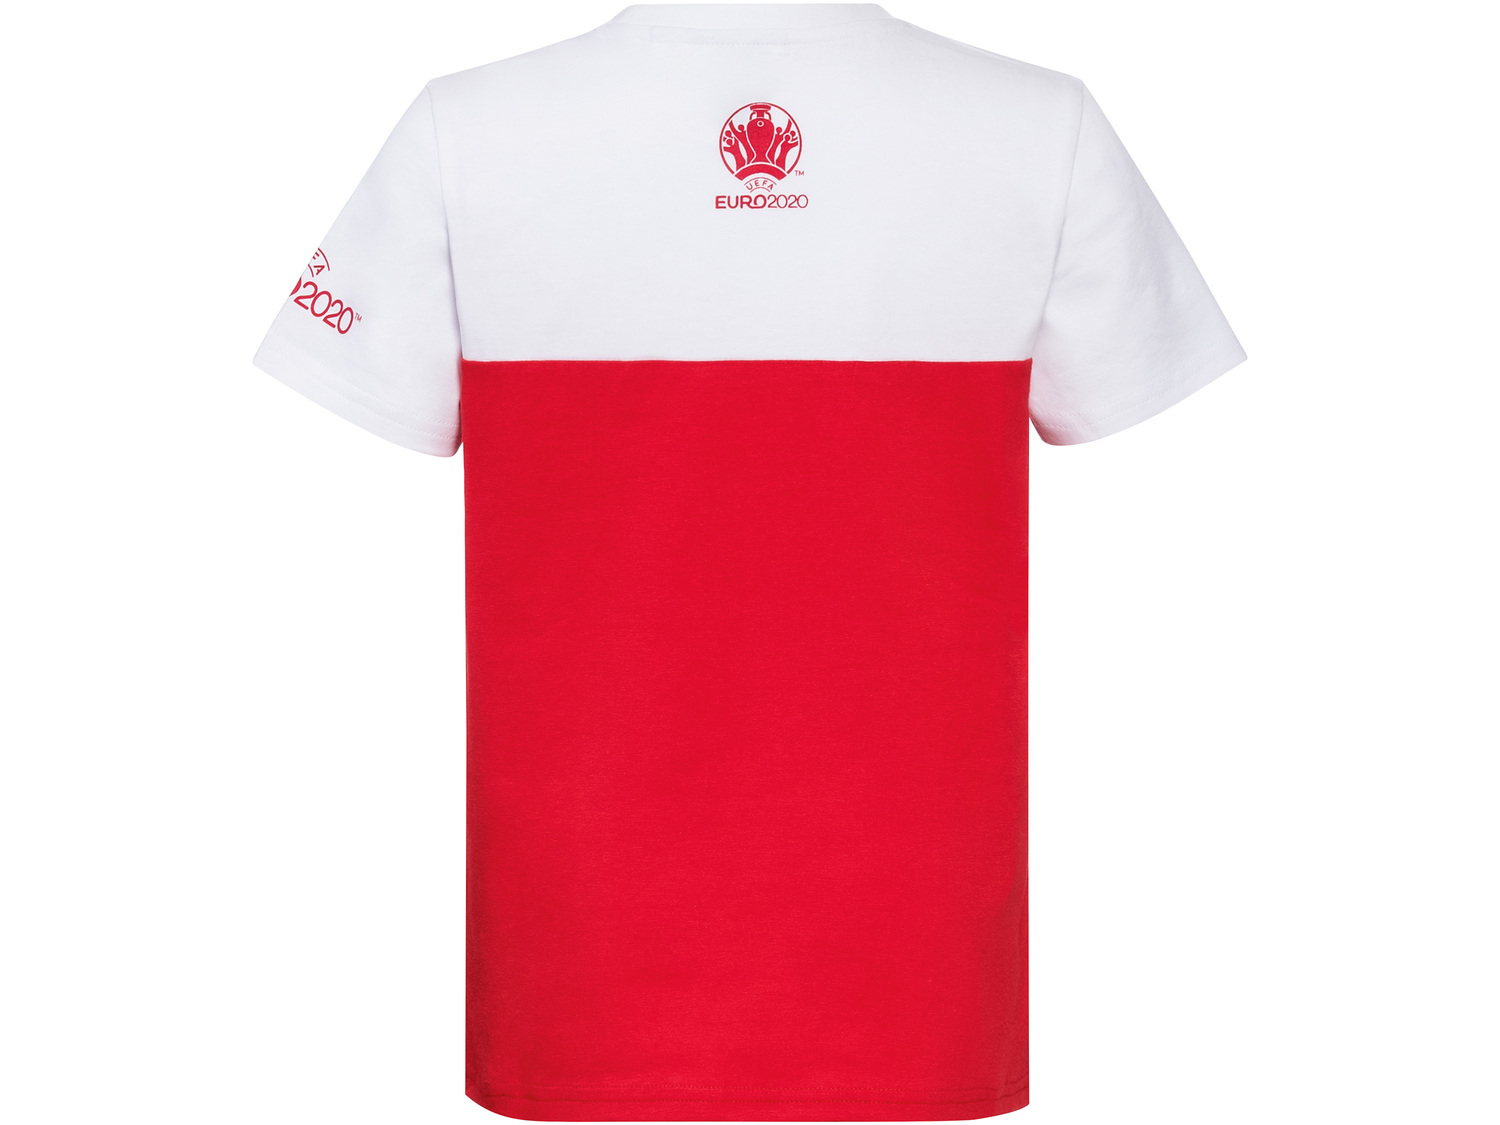 Koszulka piłkarska chłopięca , cena 12,99 PLN 
- rozmiary: 110-164
- wysoka ...